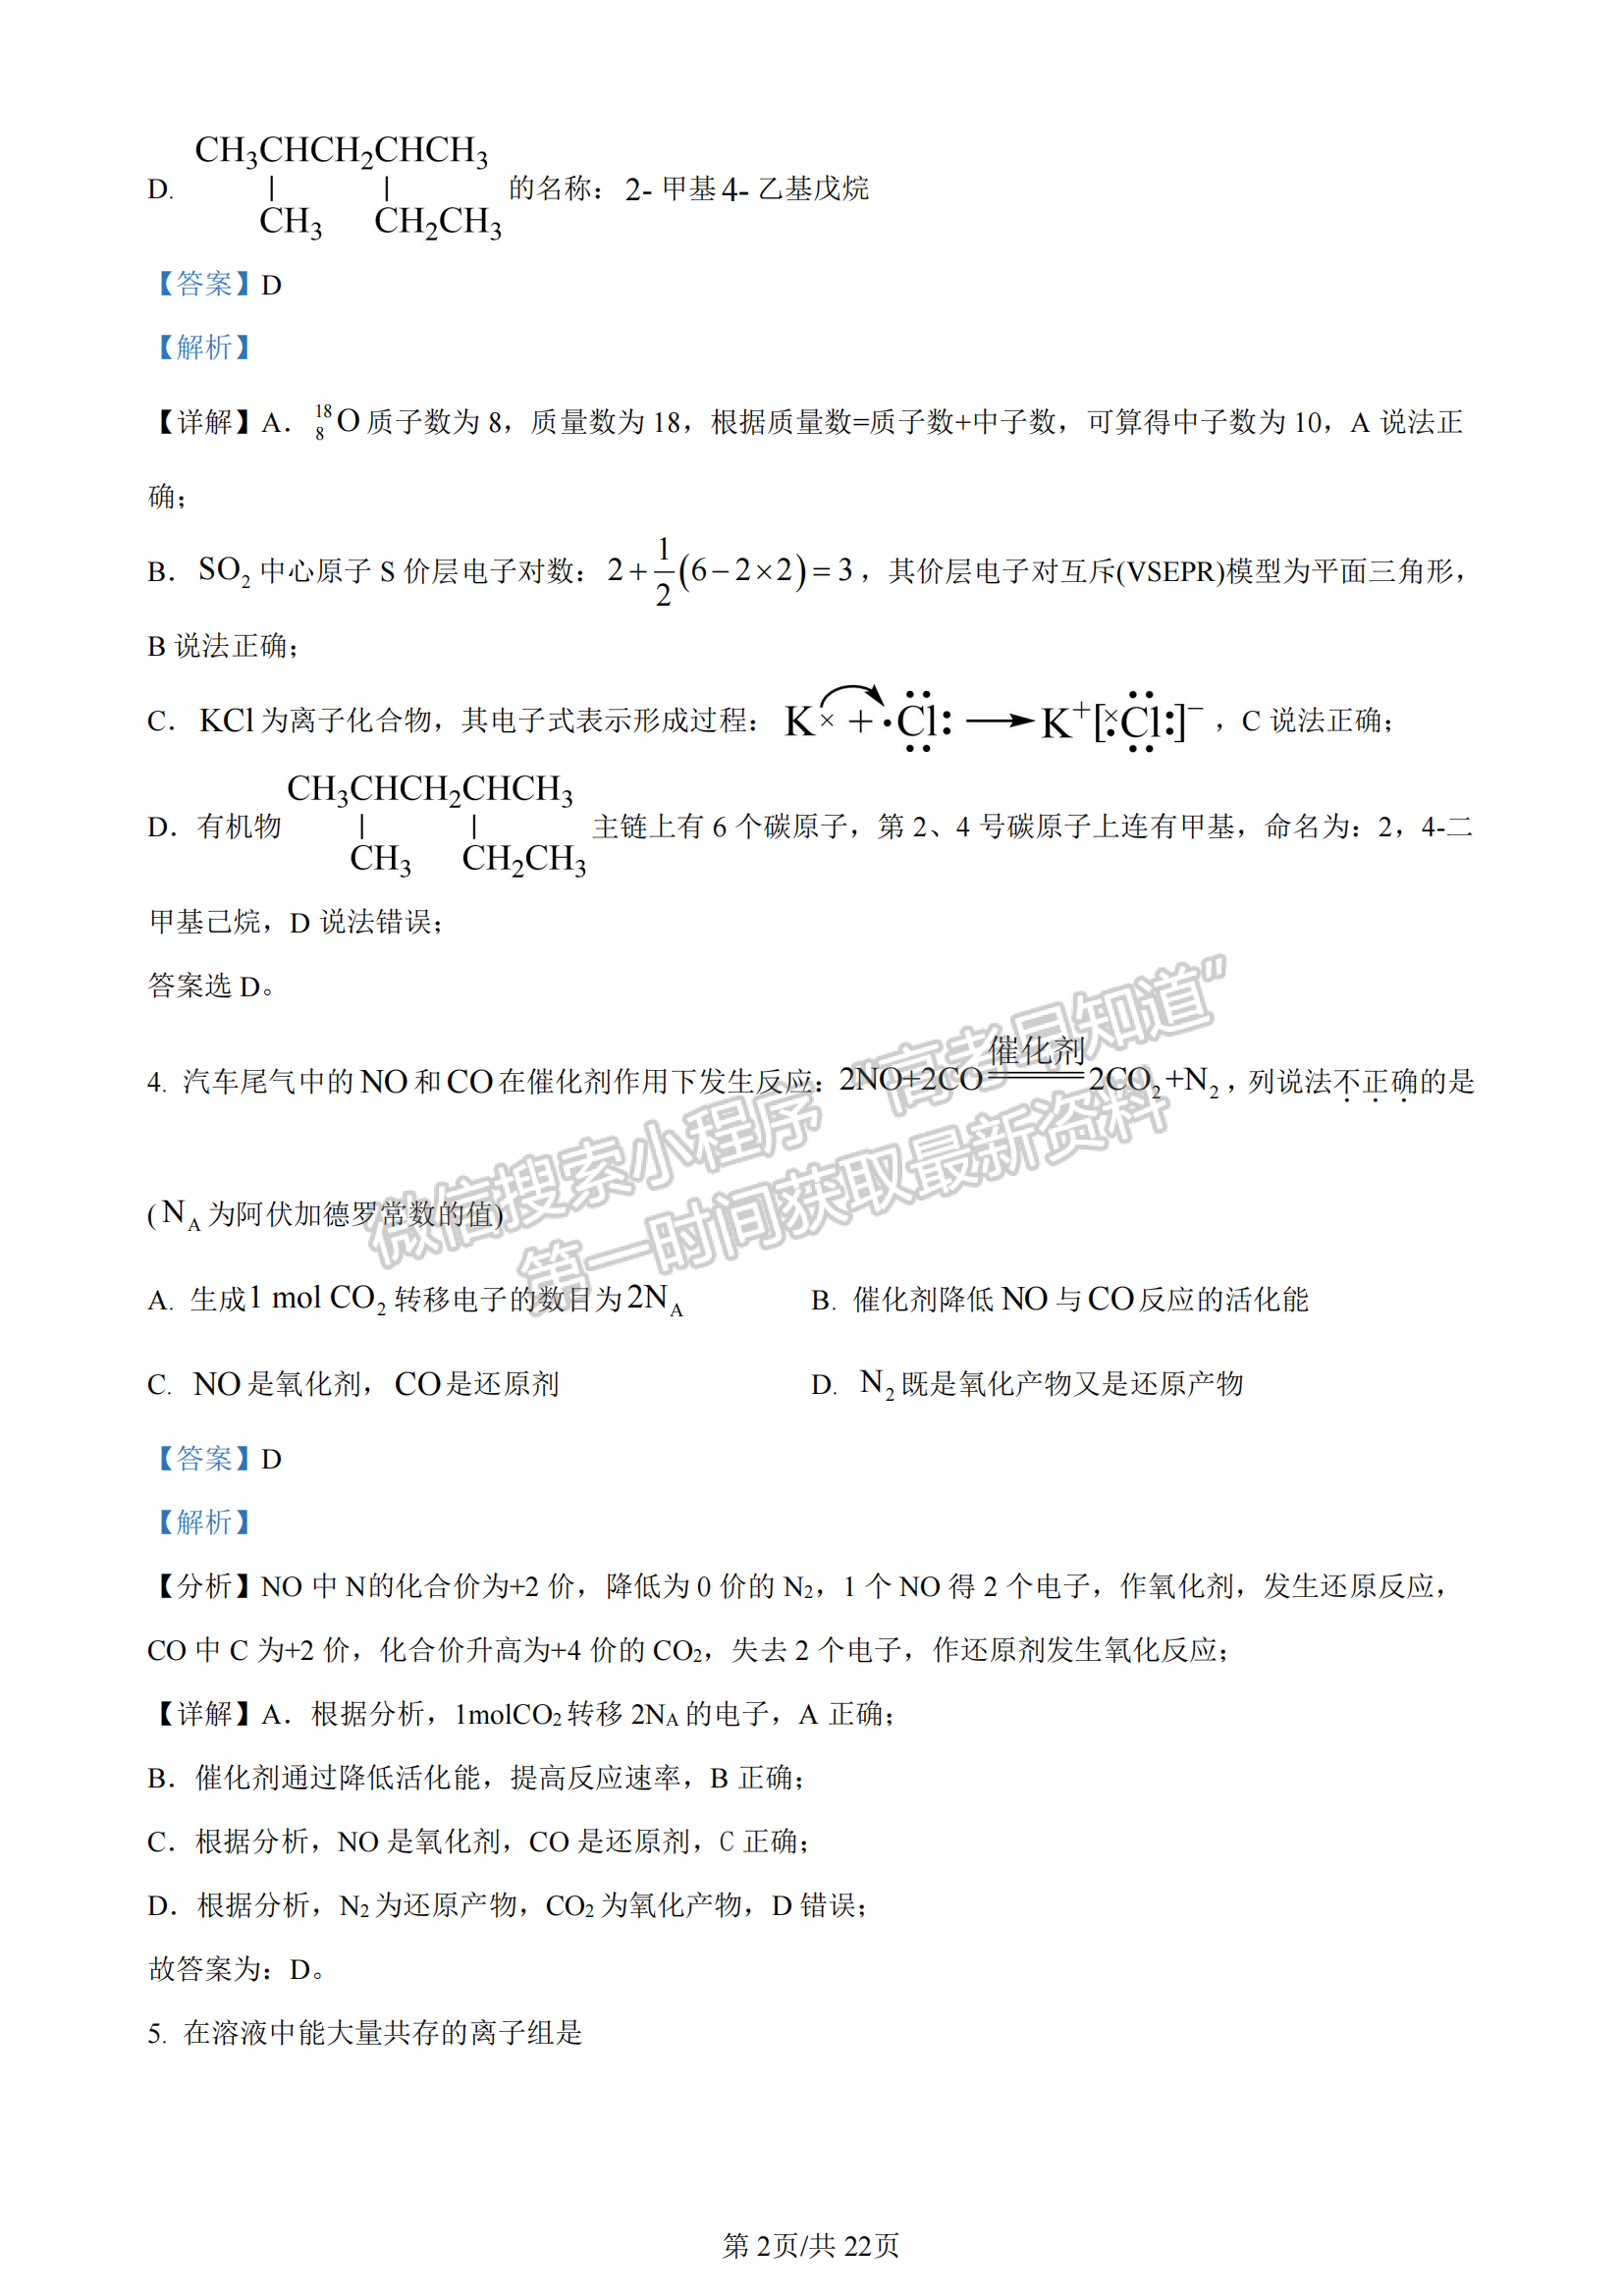 2024年1月浙江高考选考首考化学试题及答案